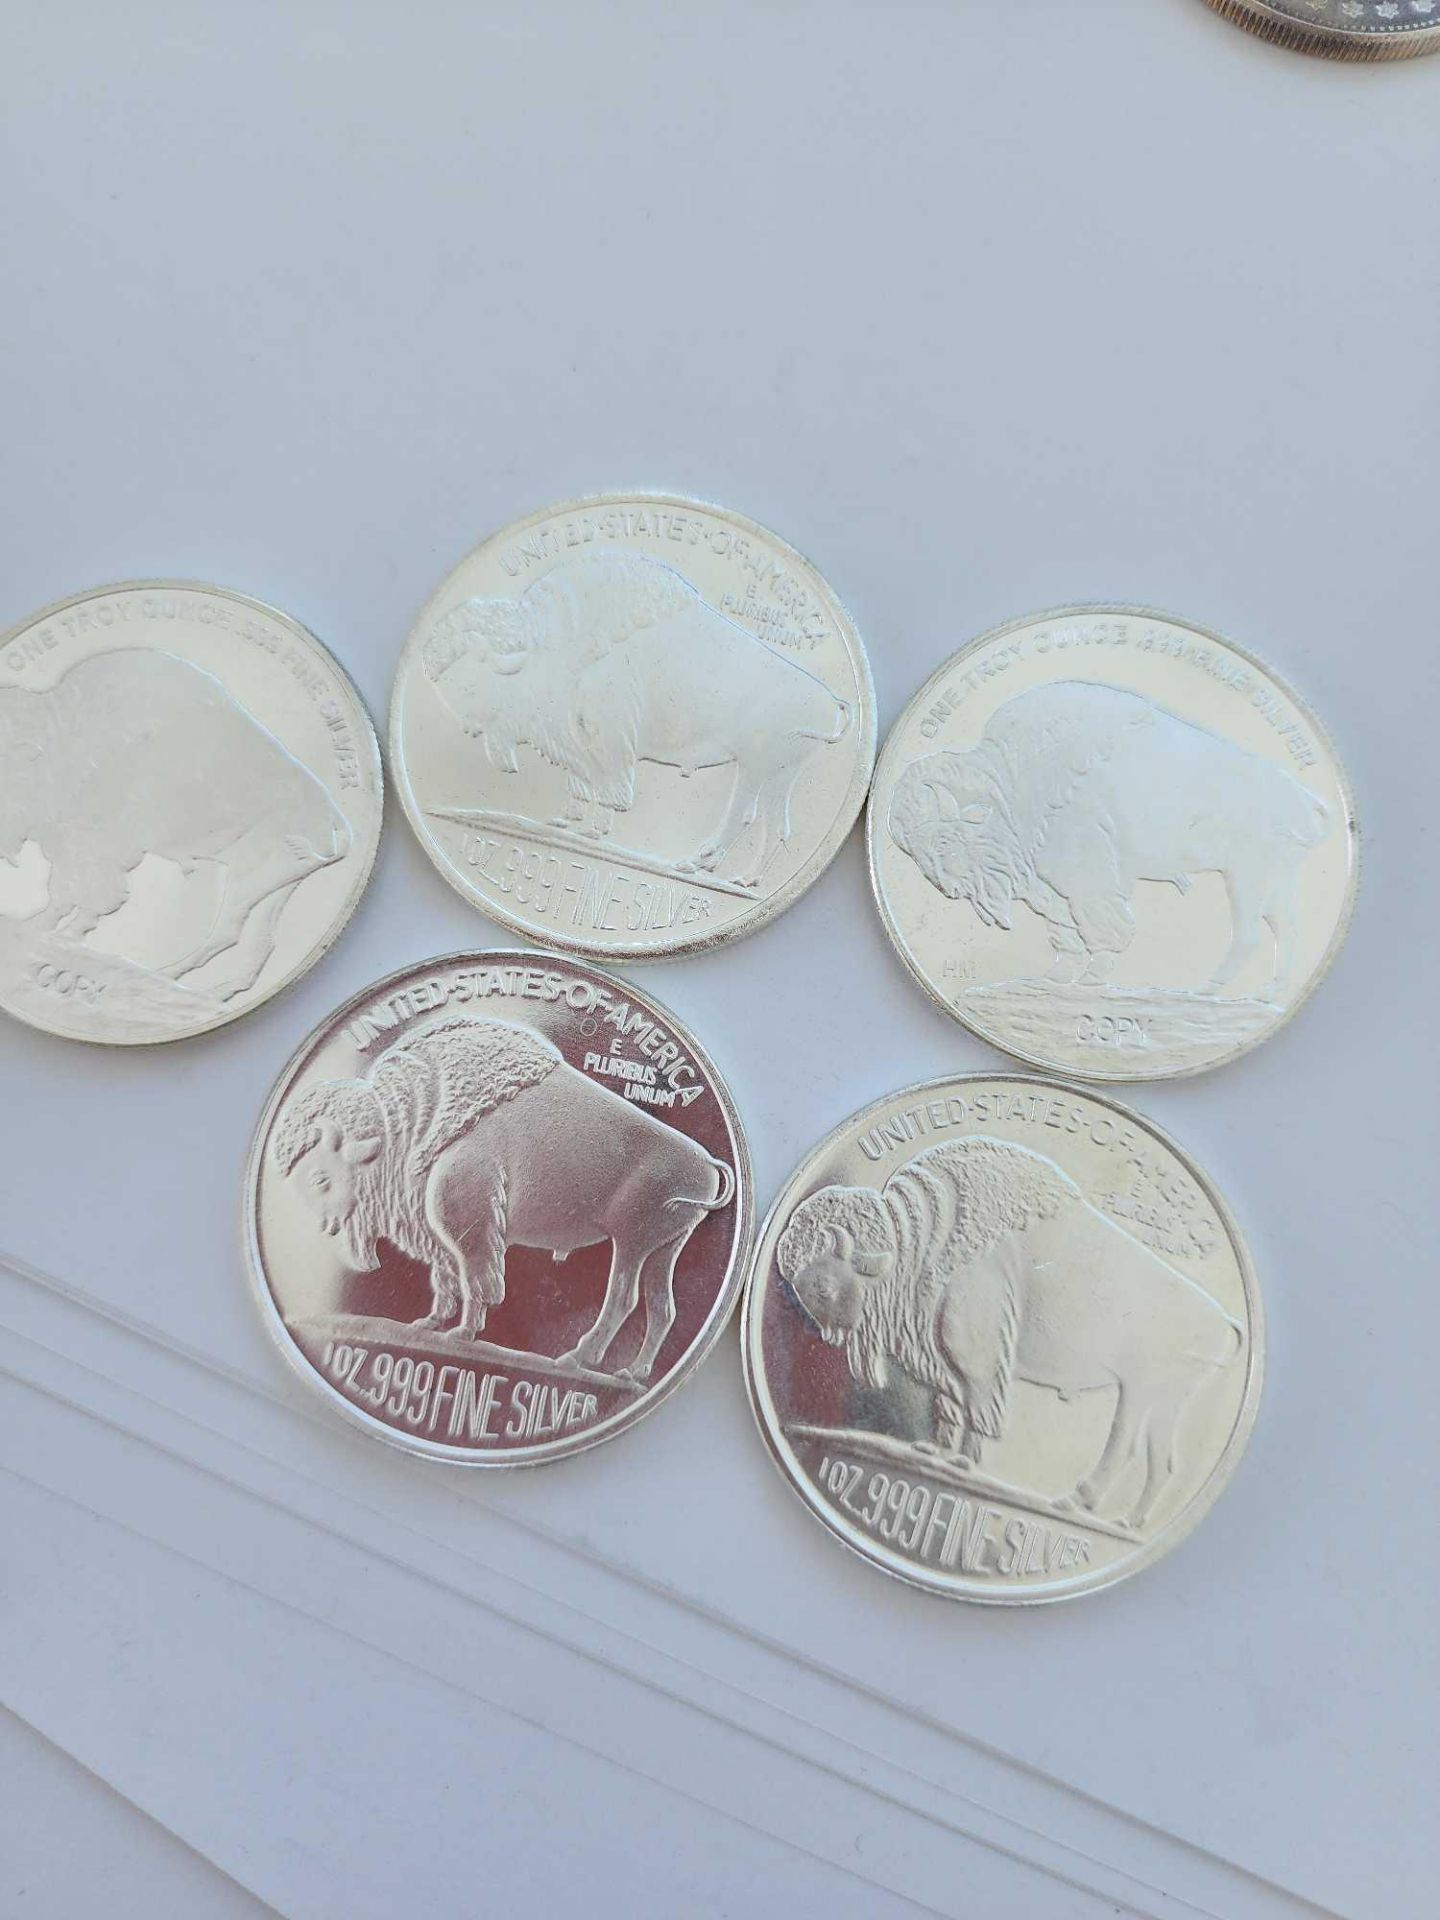 5 1 oz Buffalo Coins silver coins - Image 6 of 6